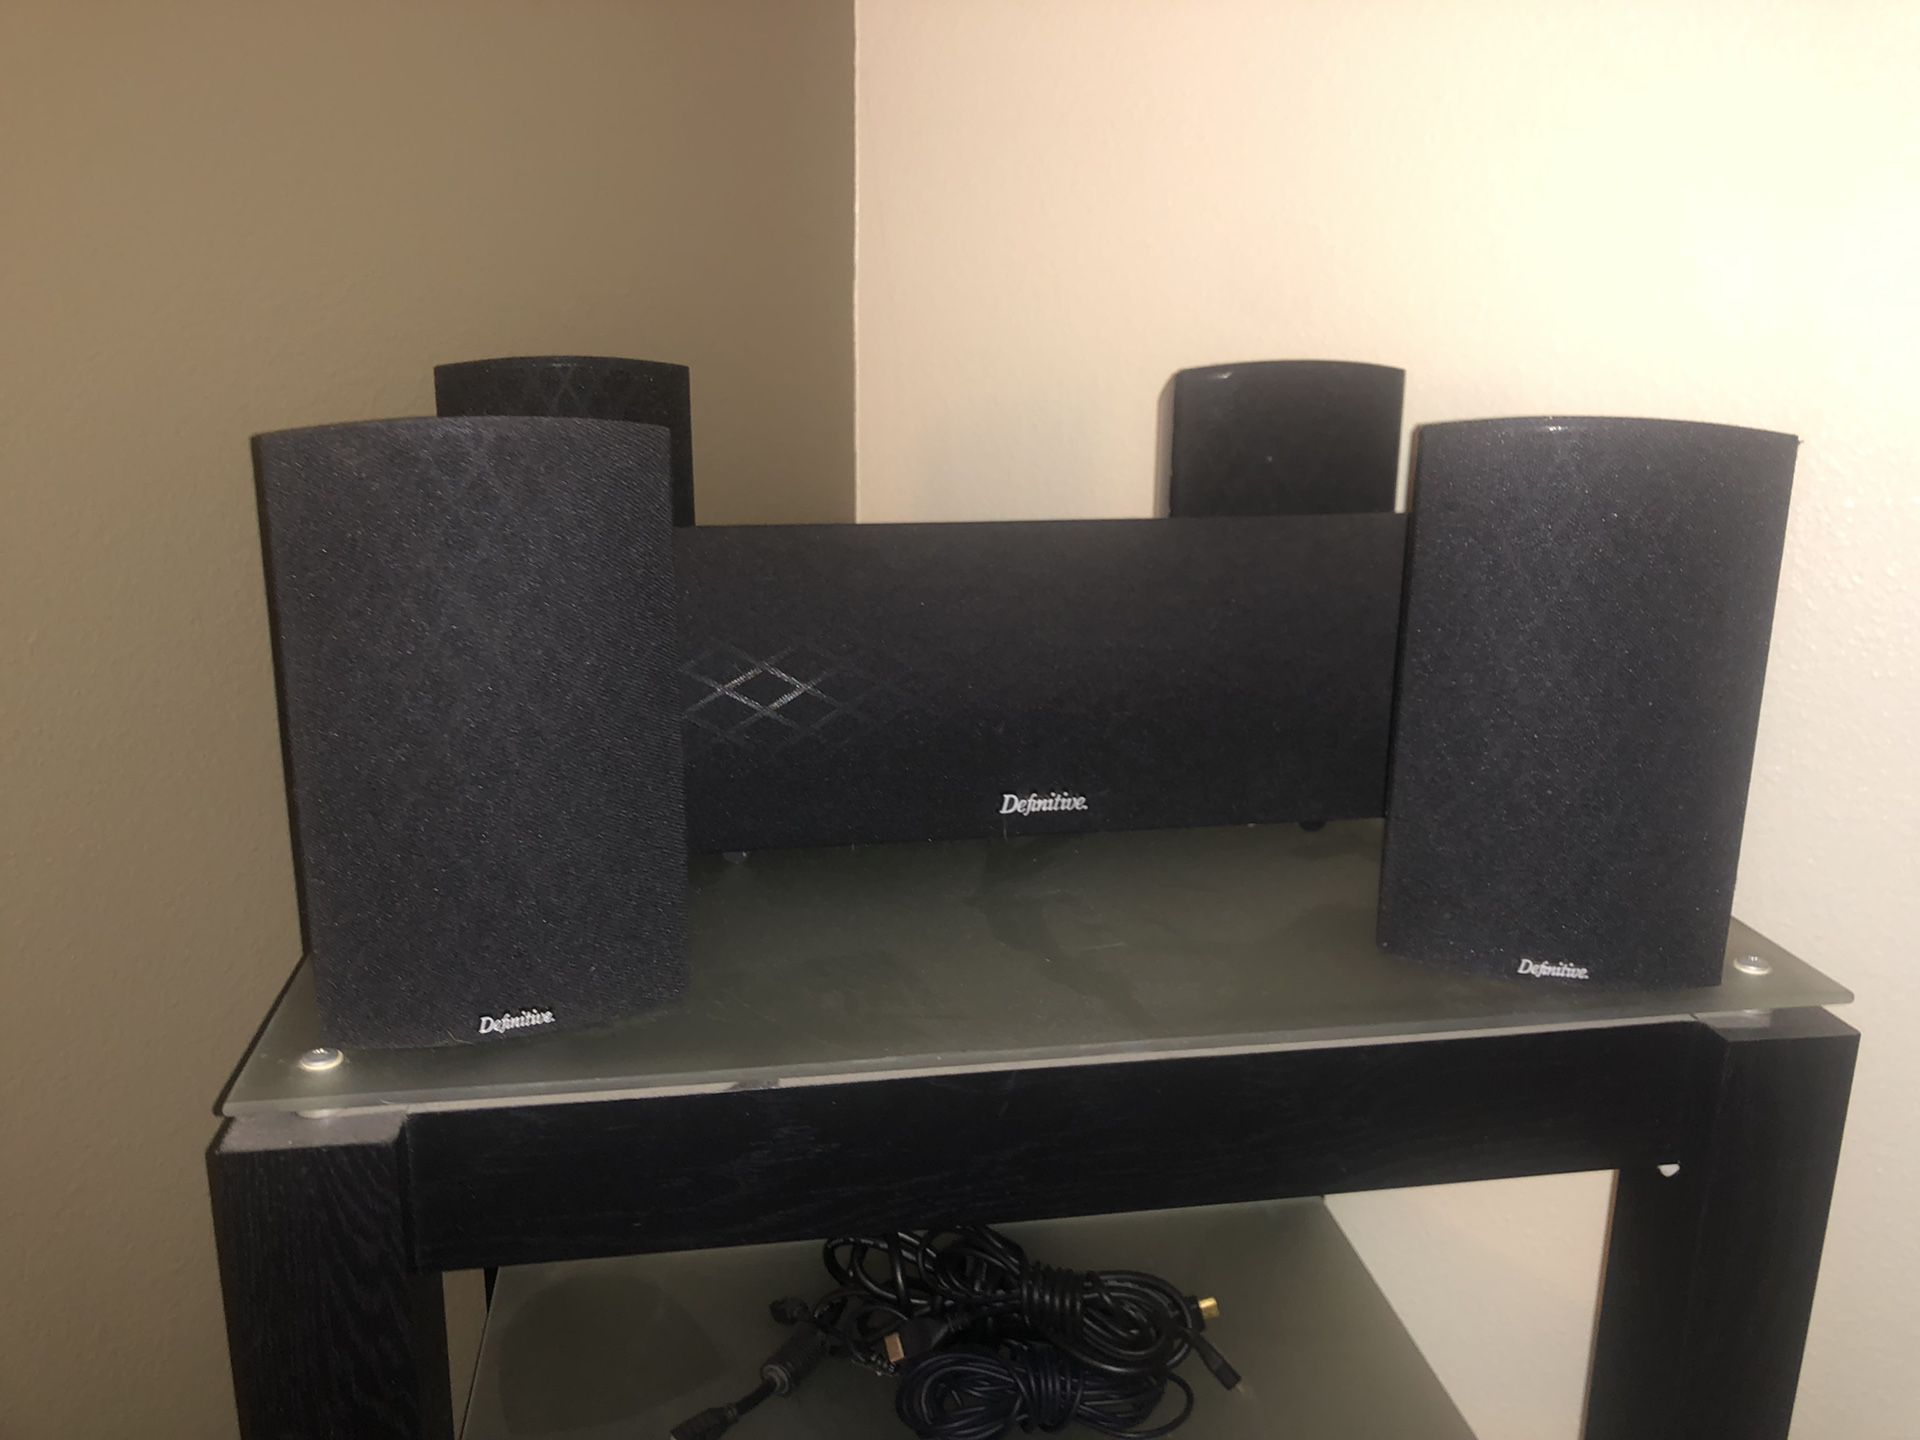 Marantz receiver with speakers